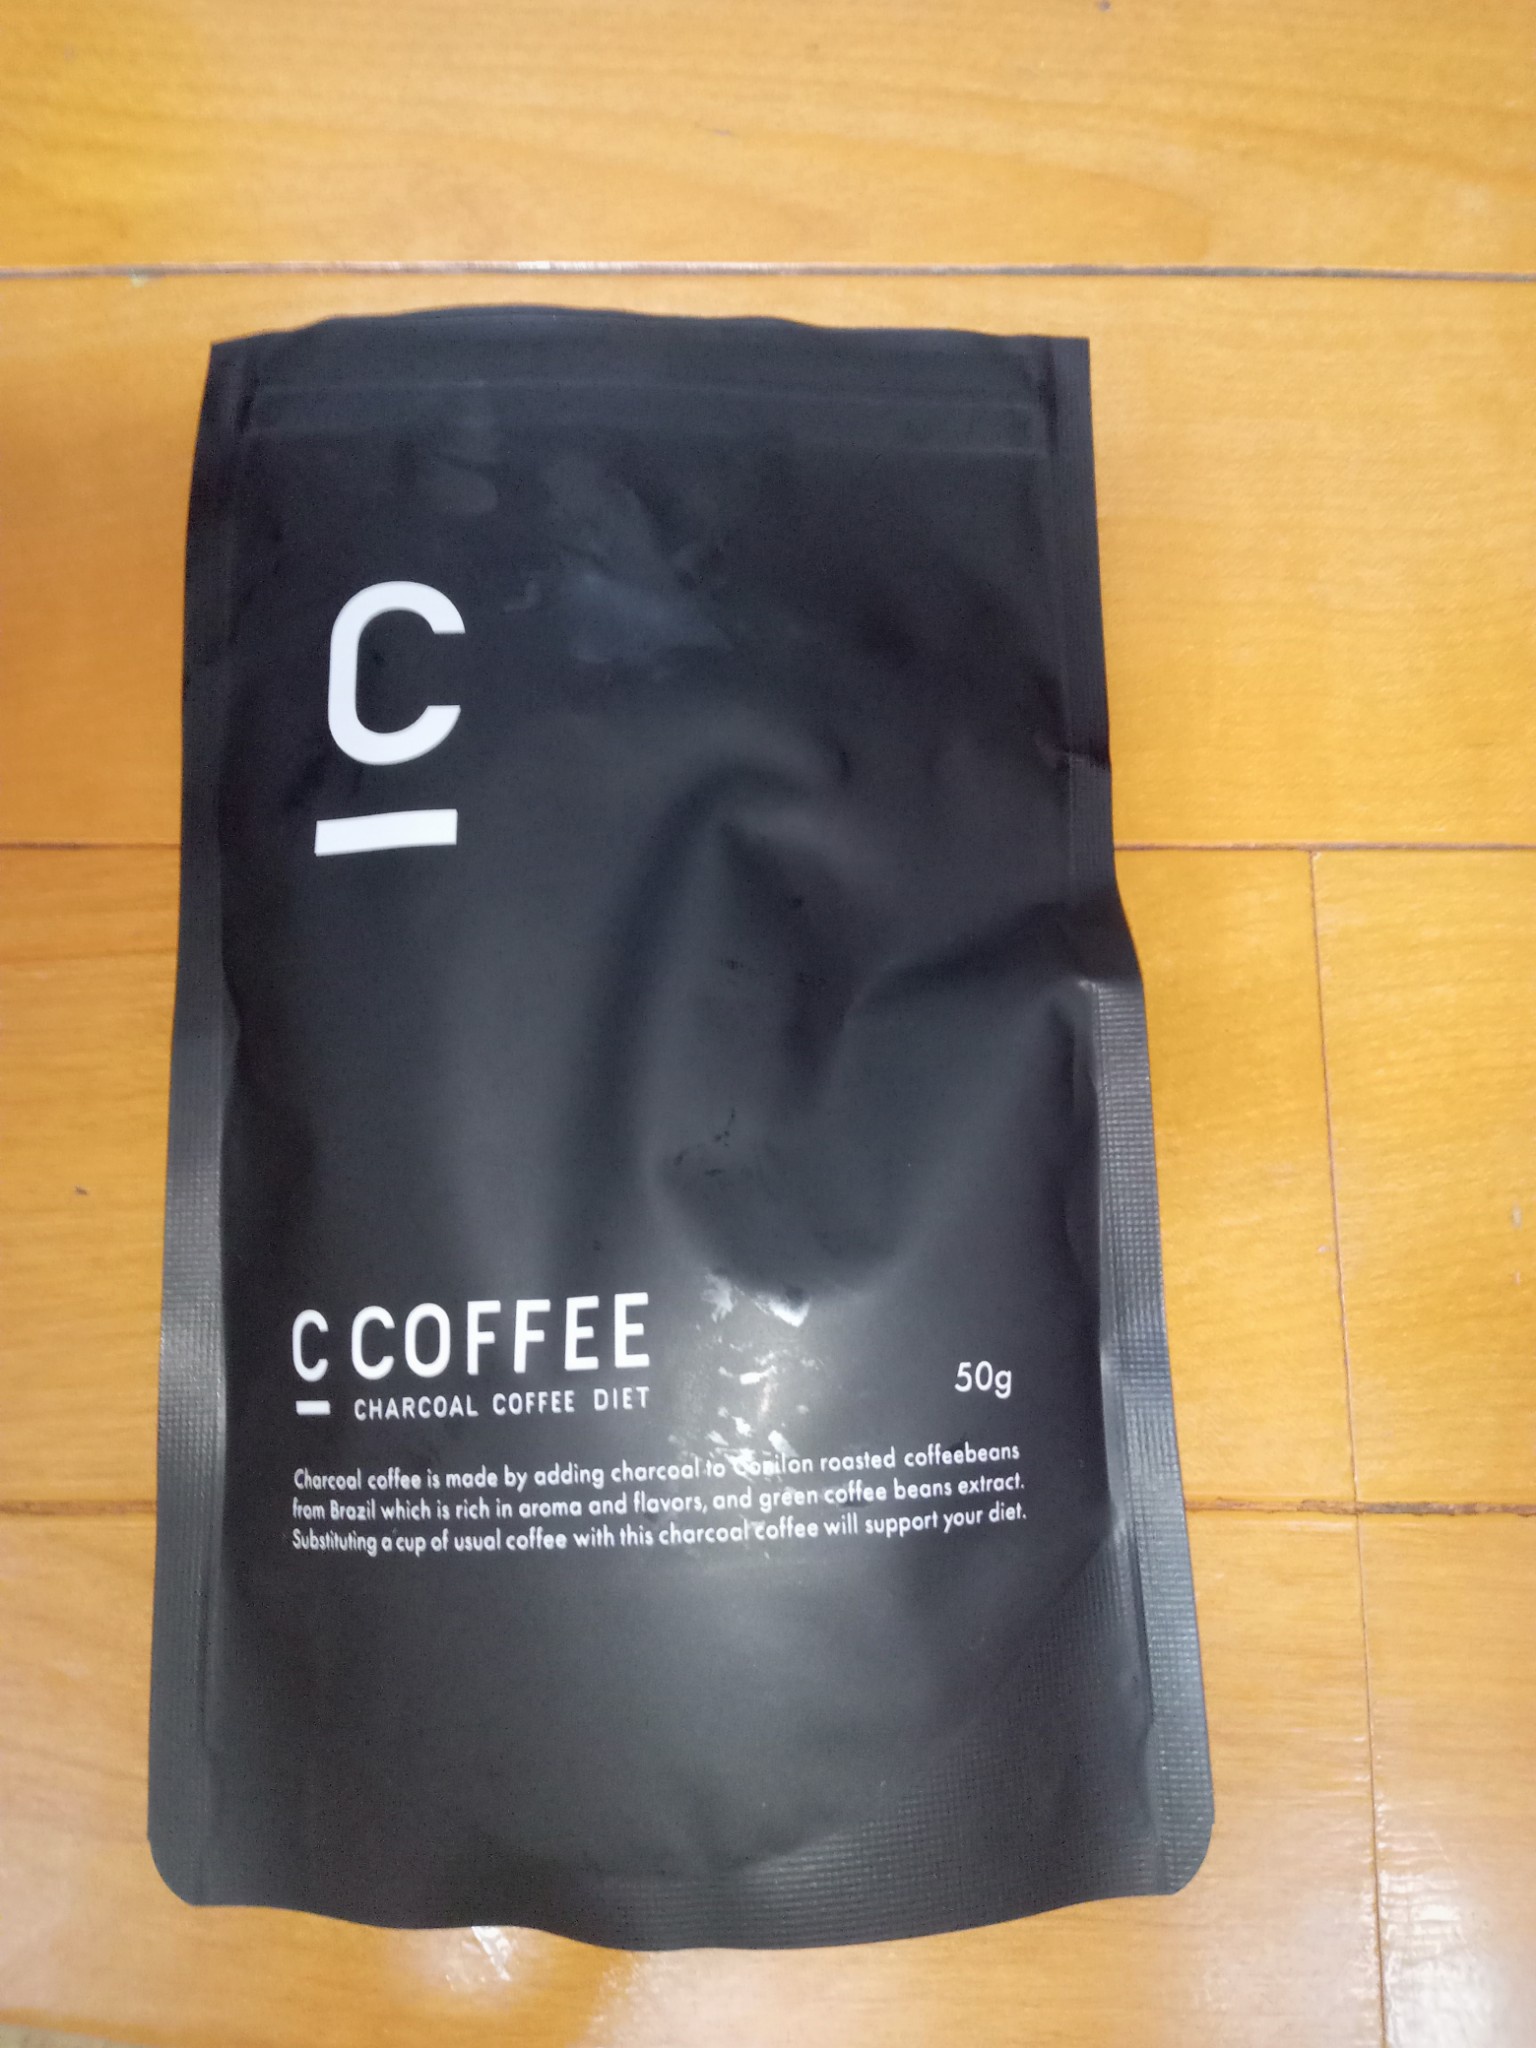 C COFFEE チャコールコーヒーダイエット 100g×3